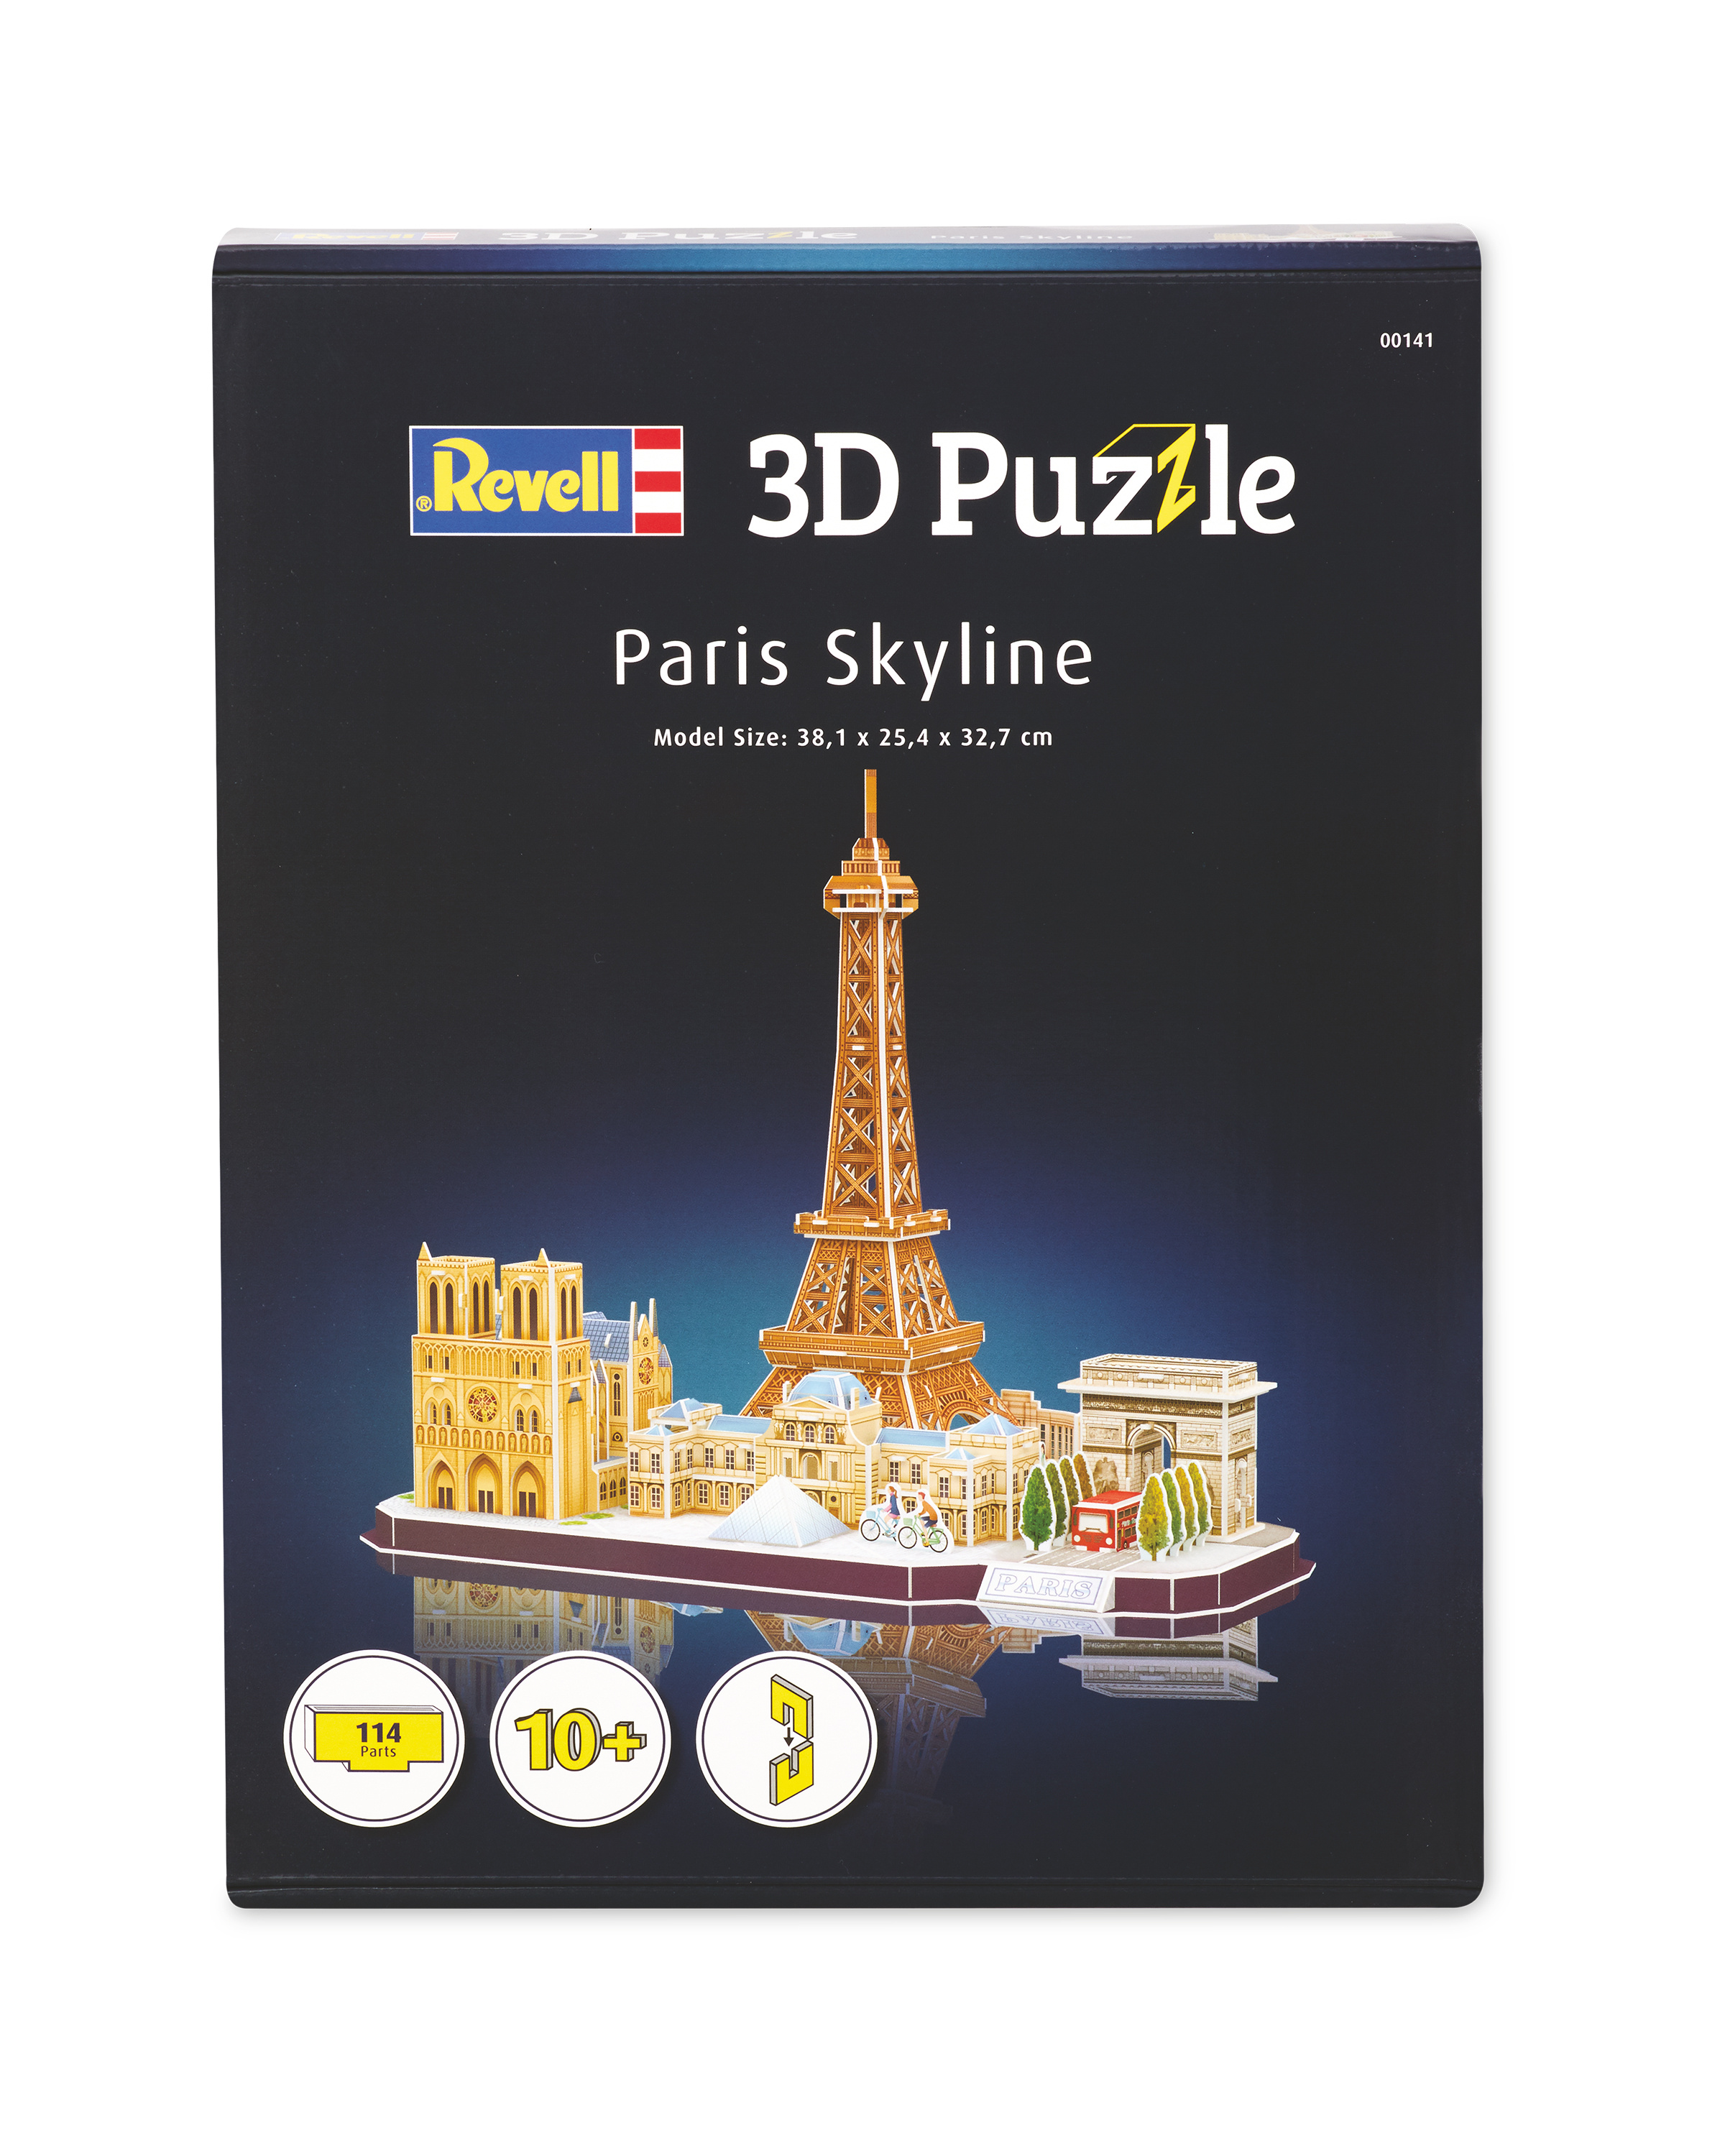 Paris 3d Puzzle Aldi Uk